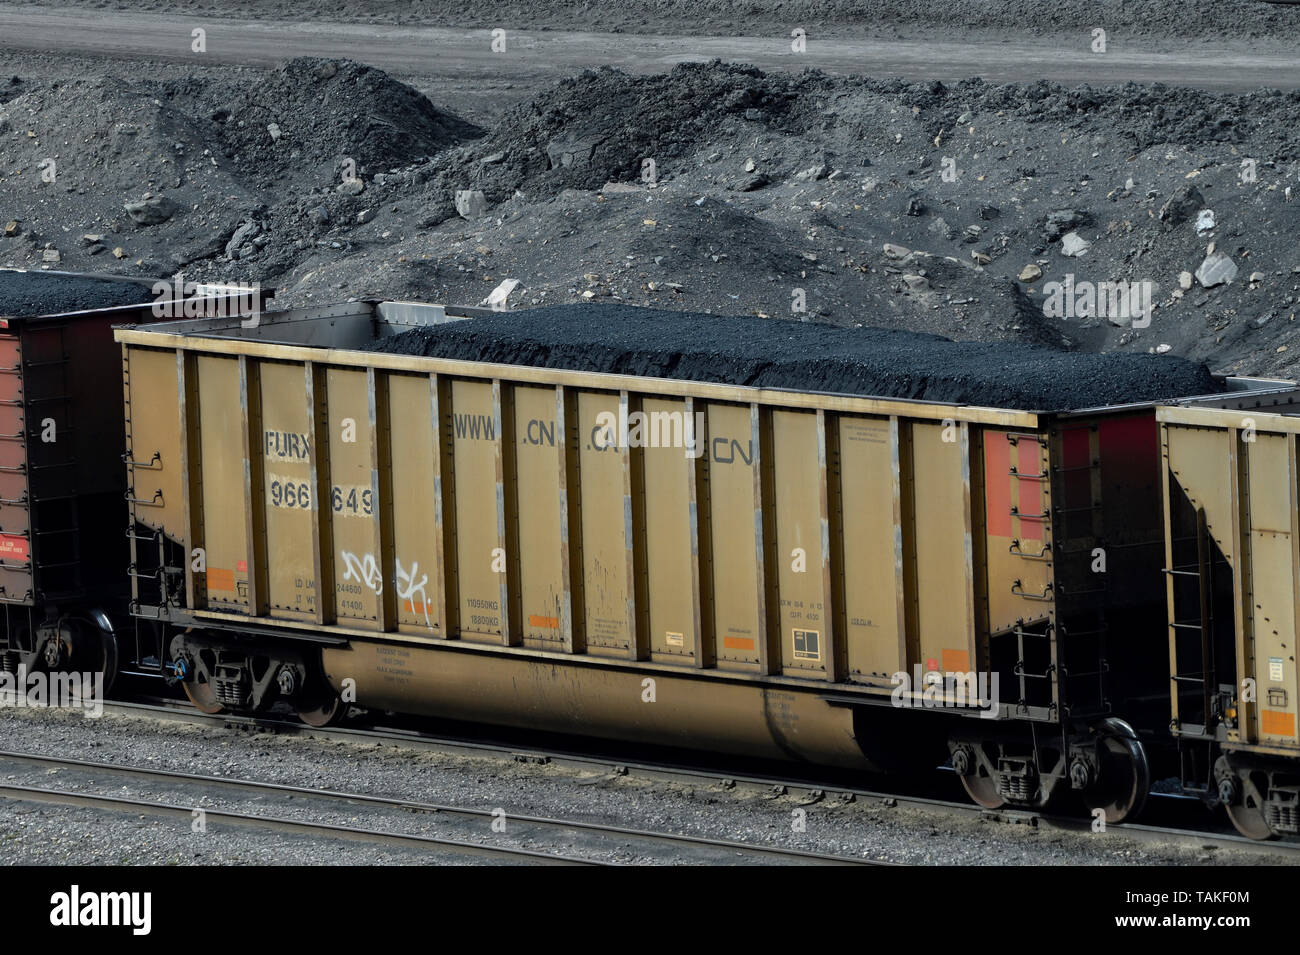 Eine kanadische National Rail Auto mit Kohle Erz aus einem Kohlebergwerk in den Ausläufern der Rocky Mountains von Alberta Kanada geladen. Stockfoto